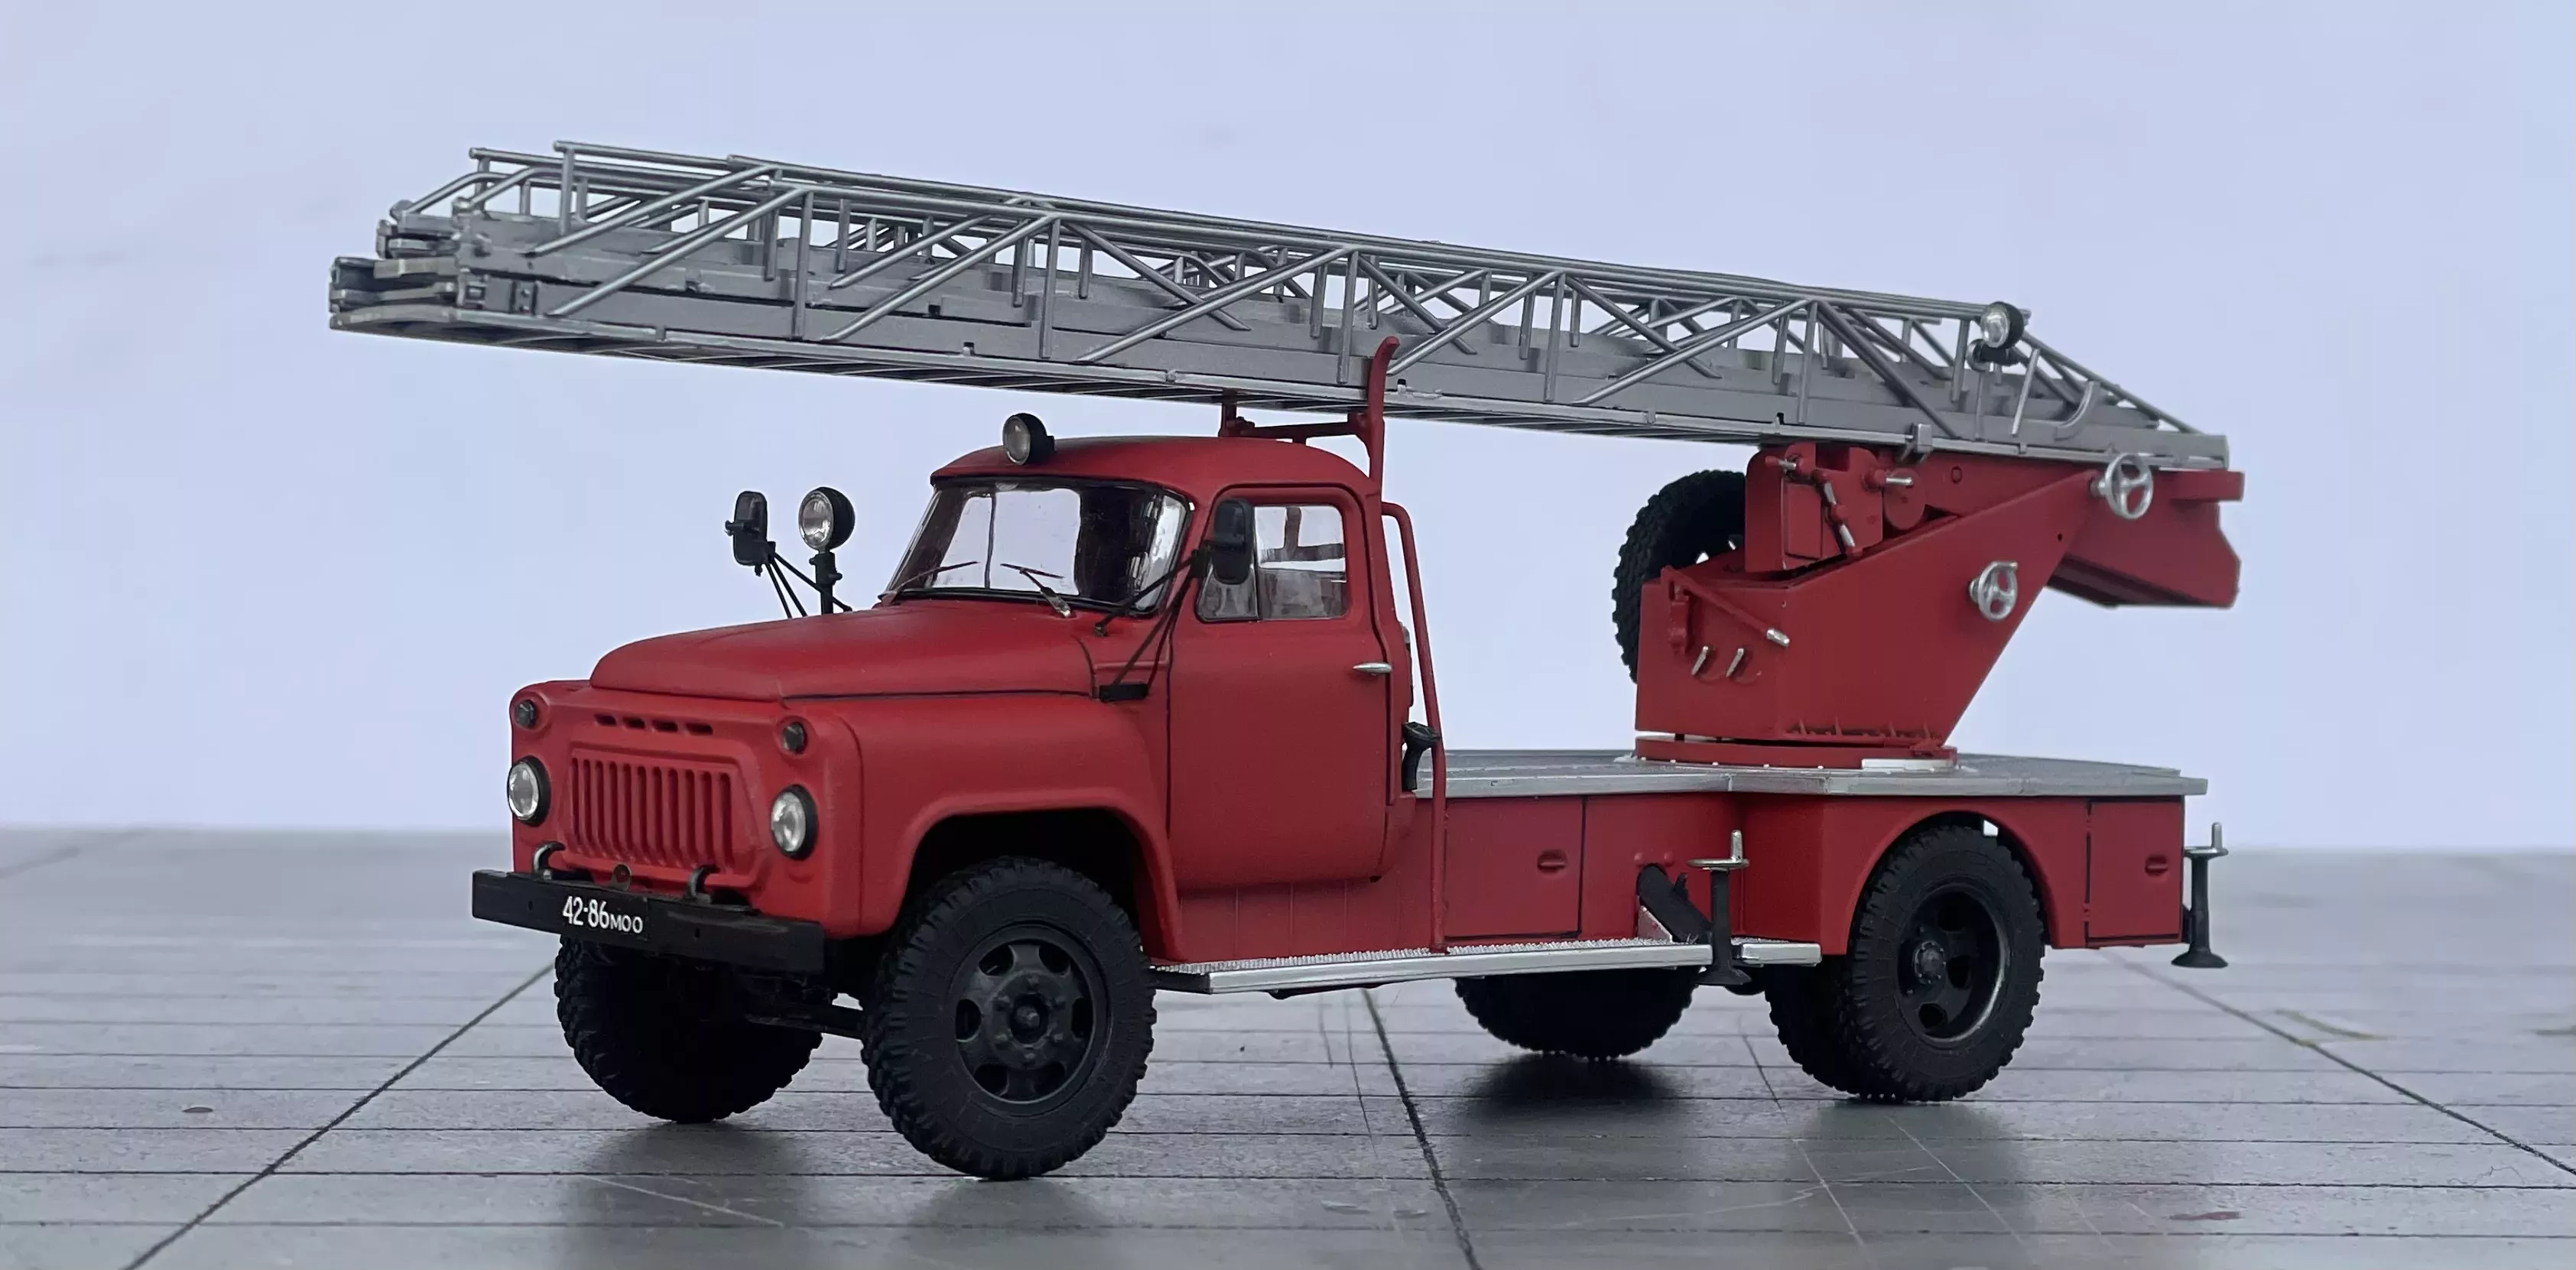 Сборная модель Пожарная автолестница АЛ-18 (52)